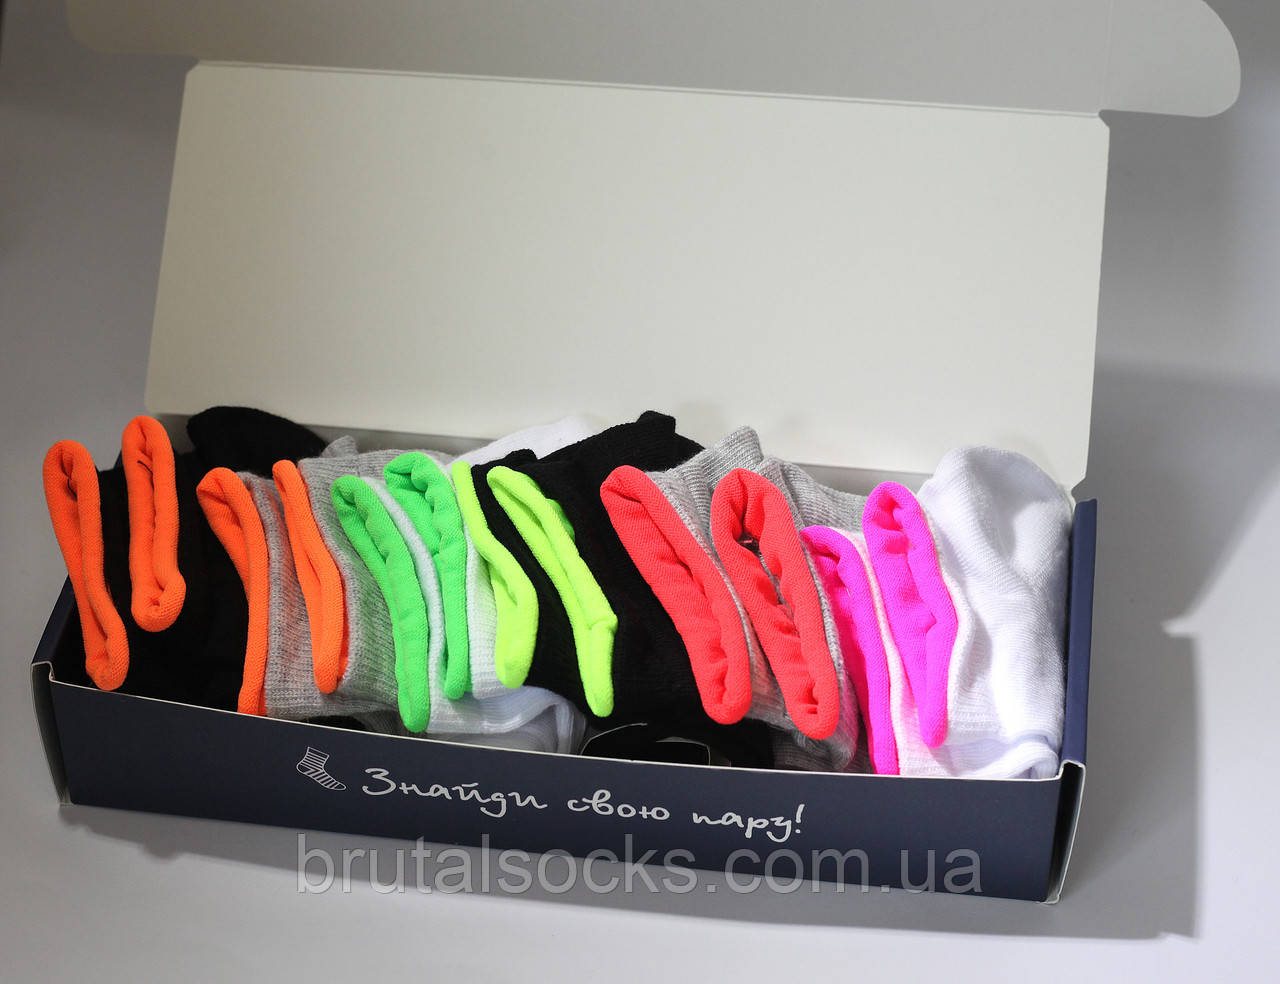 Жіночий набір коротких шкарпеток (бренд BOX) від ТМ TwinSocks - 6 шт на Ваш вибір